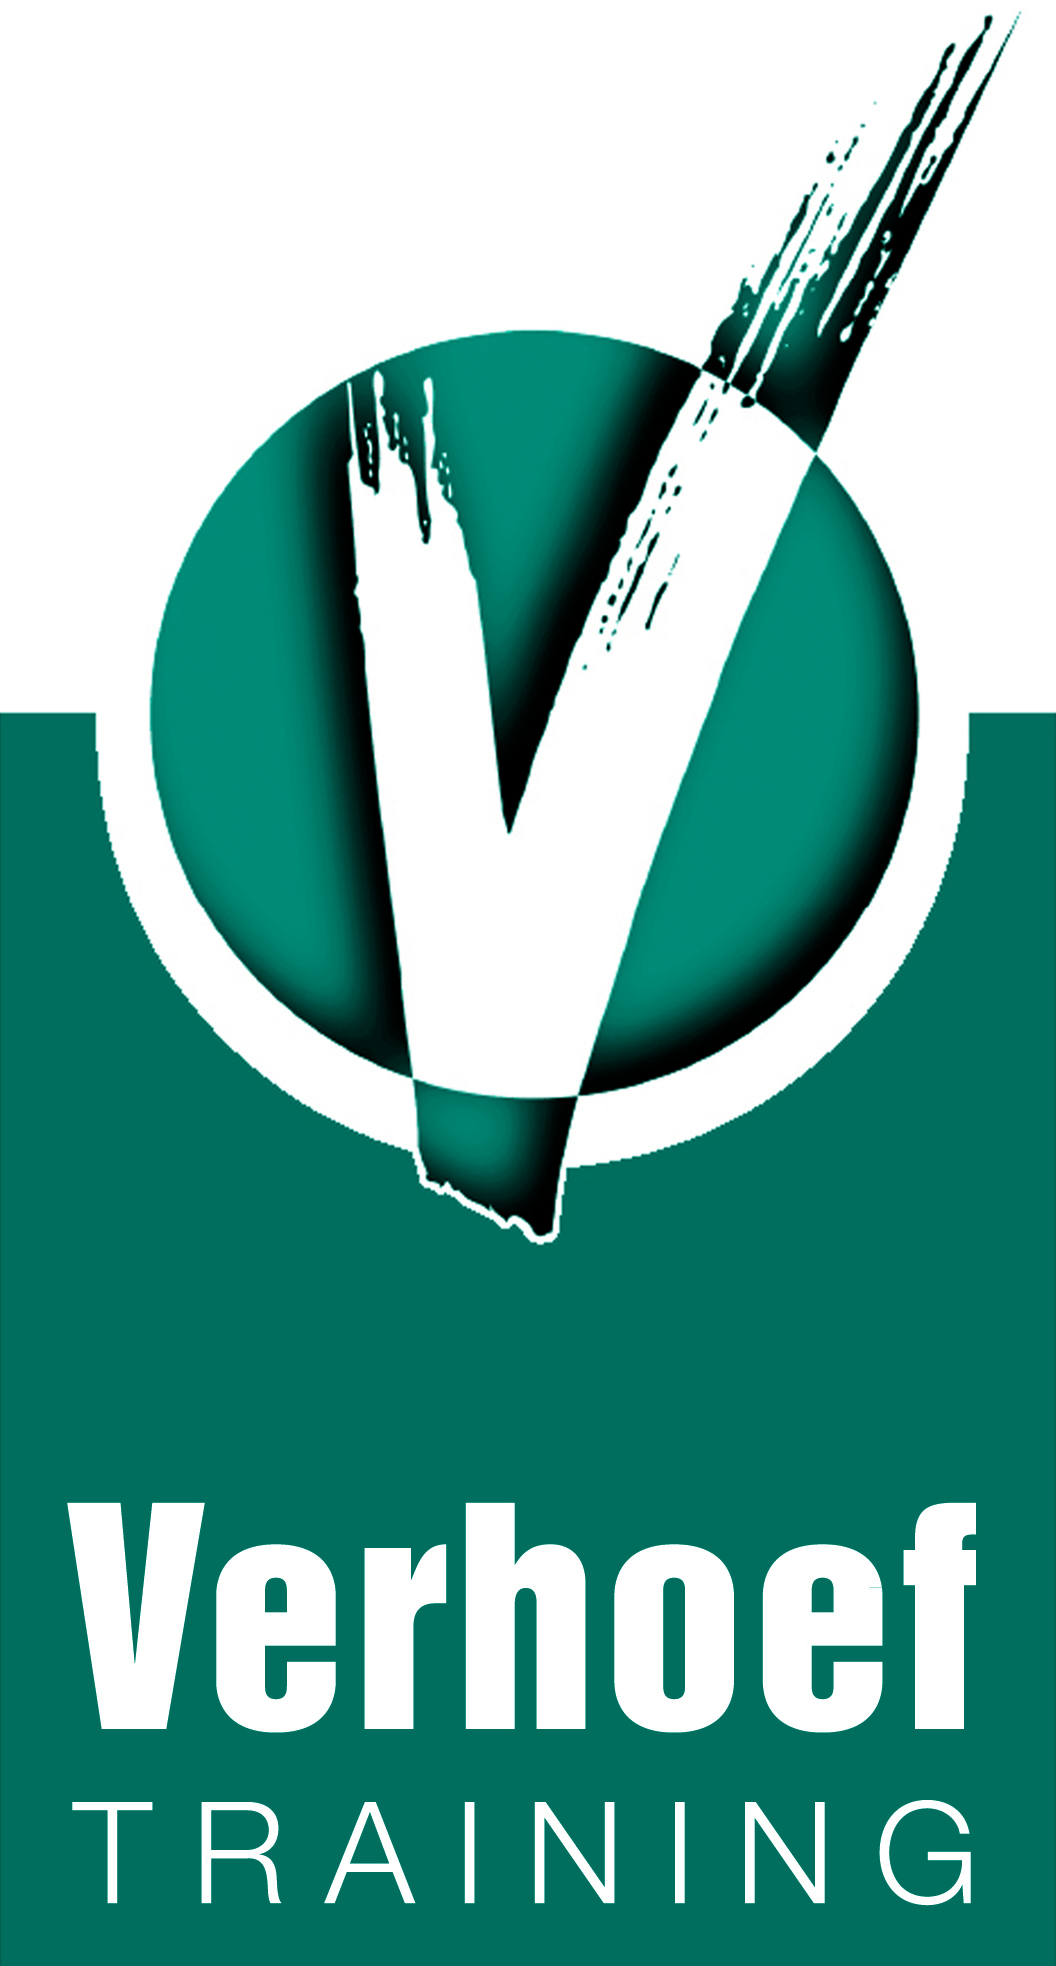 verhoef 2018 logo